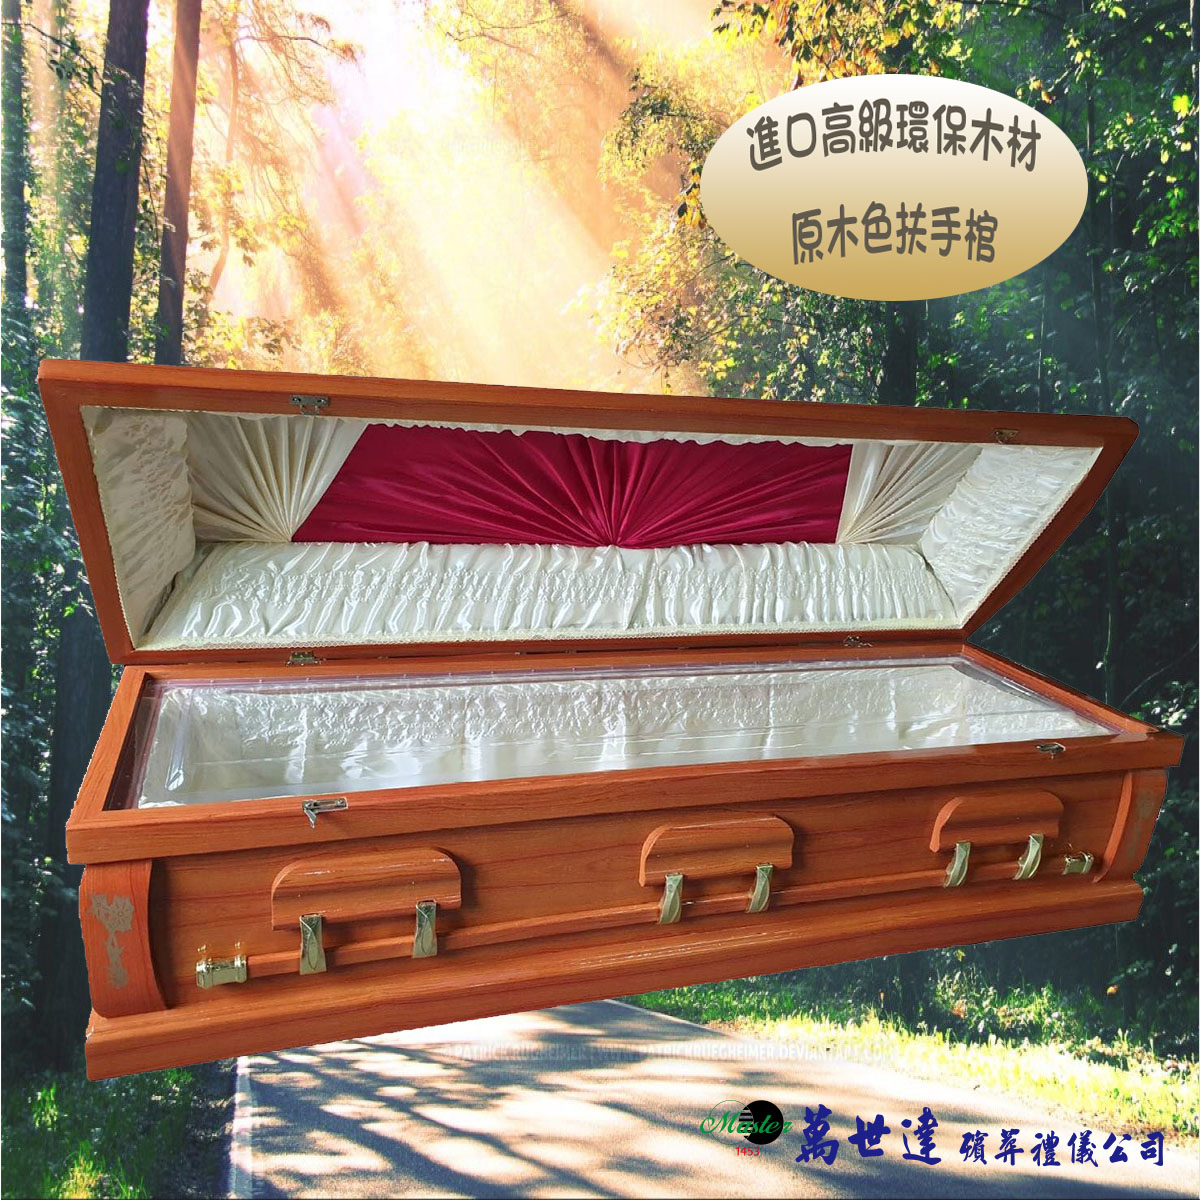 【入殮出】十字架基督天主火化平蓋原木色扶手棺2.3尺